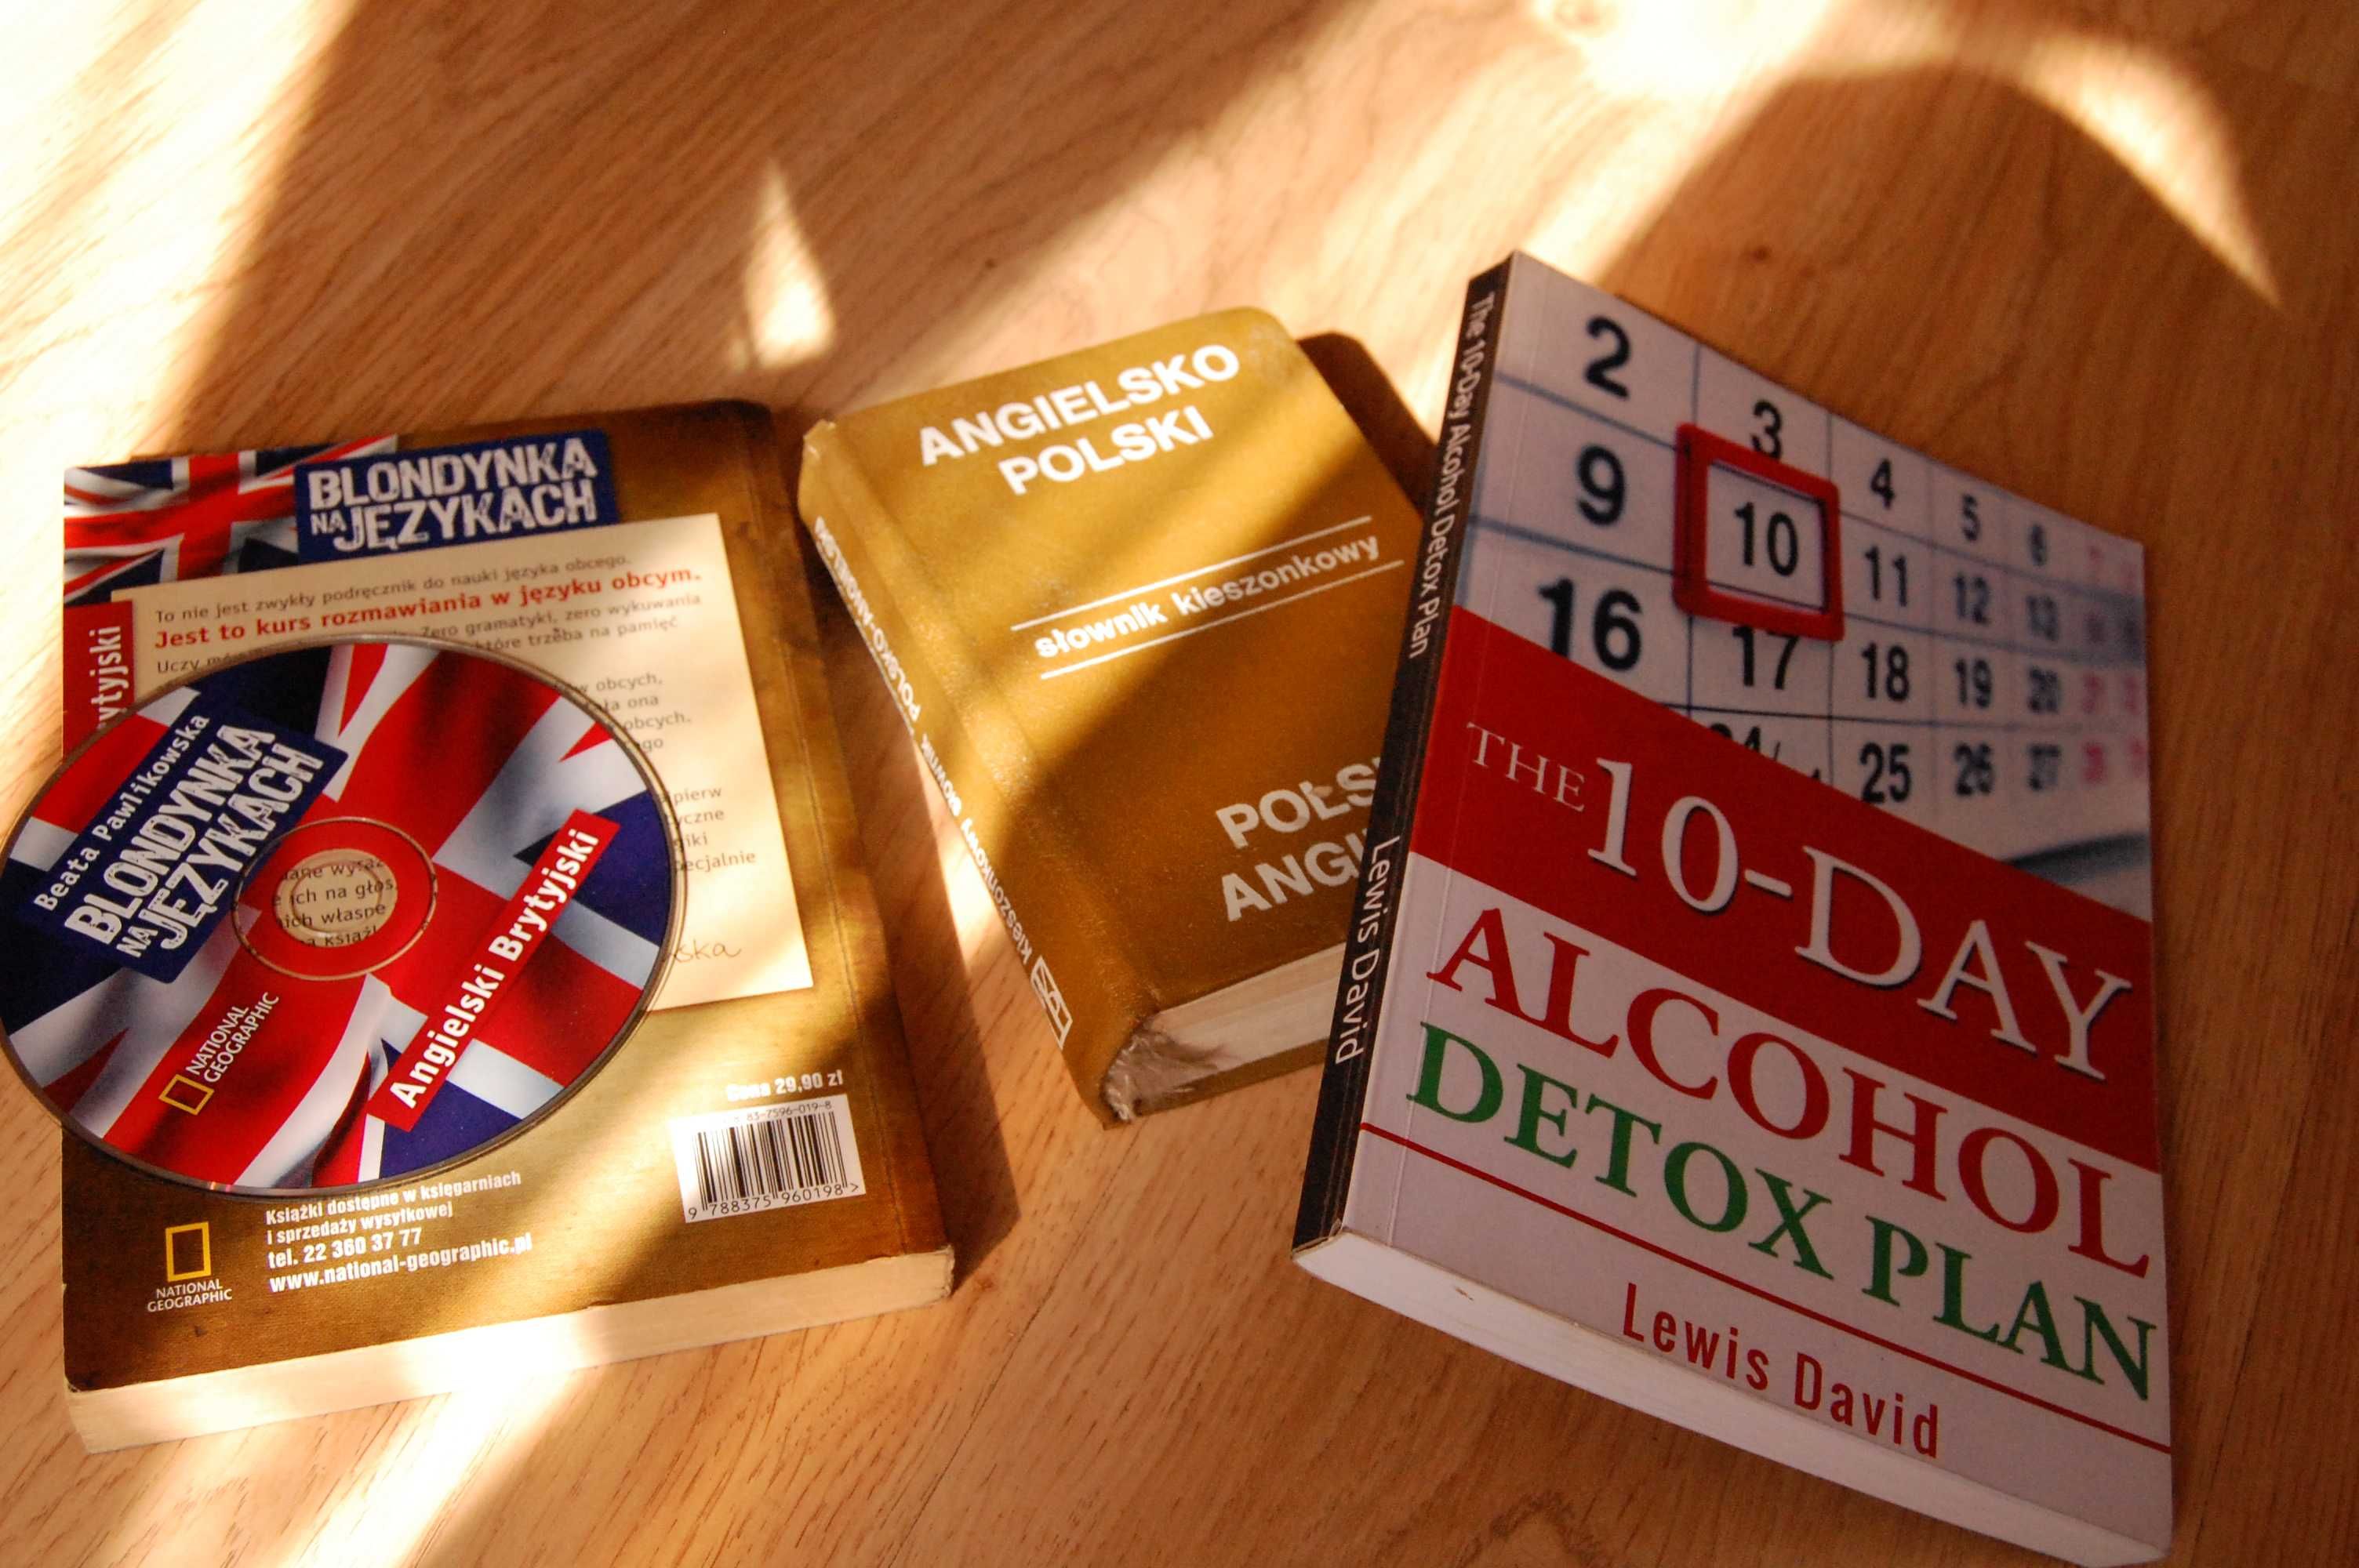 10 dni Detoxu od alkoholu + słownik angielsko polski 2 książki.